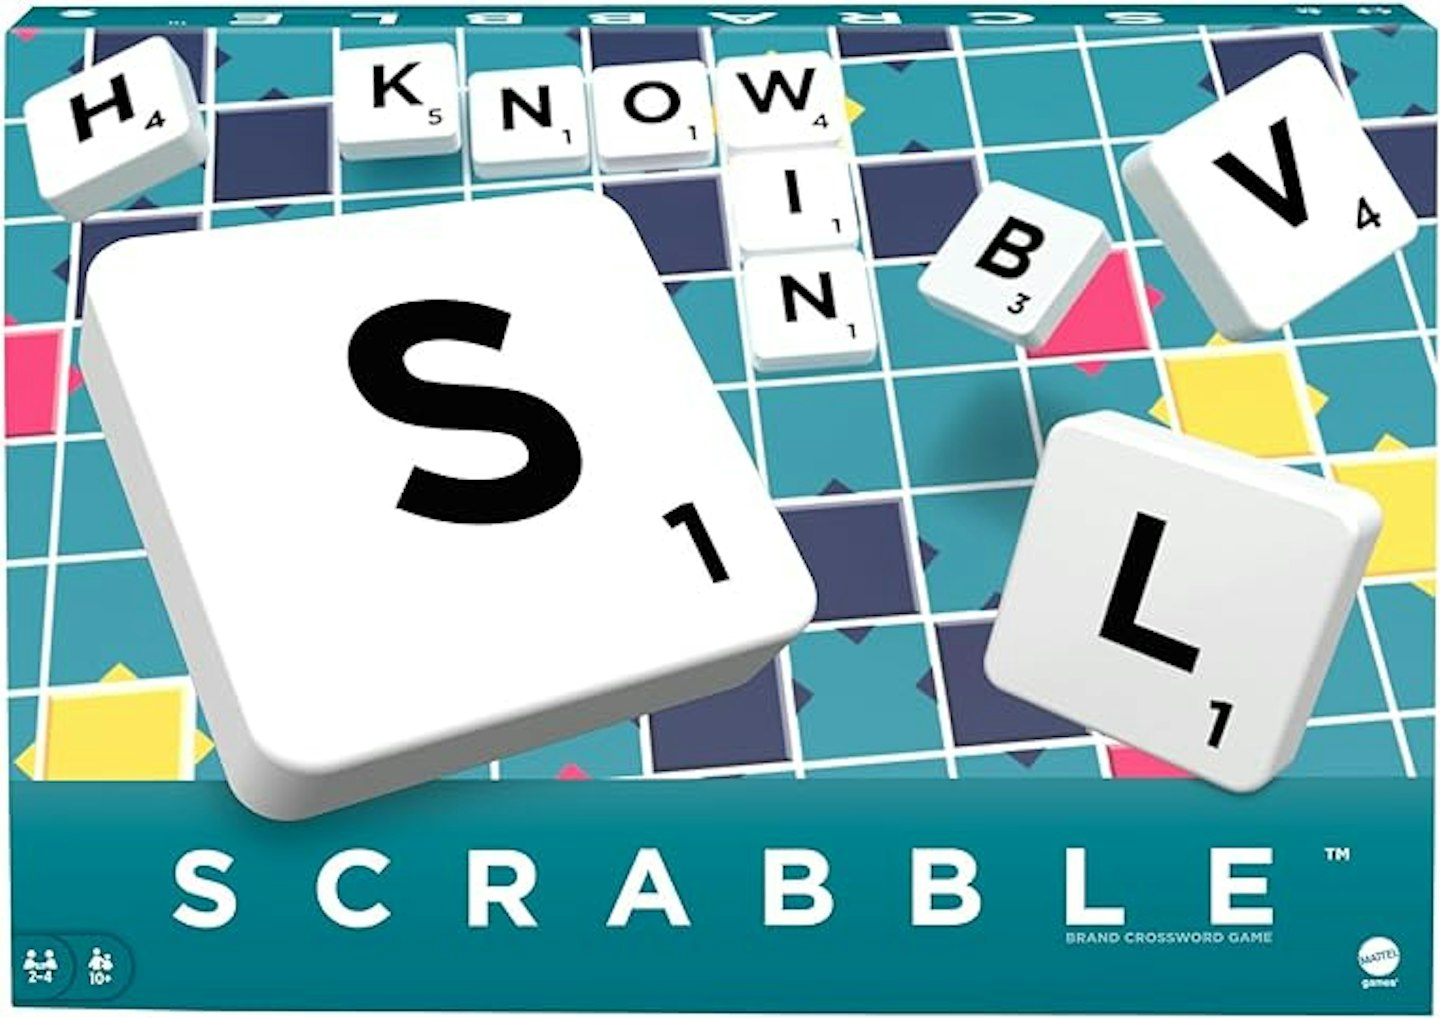 Scrabble board game box